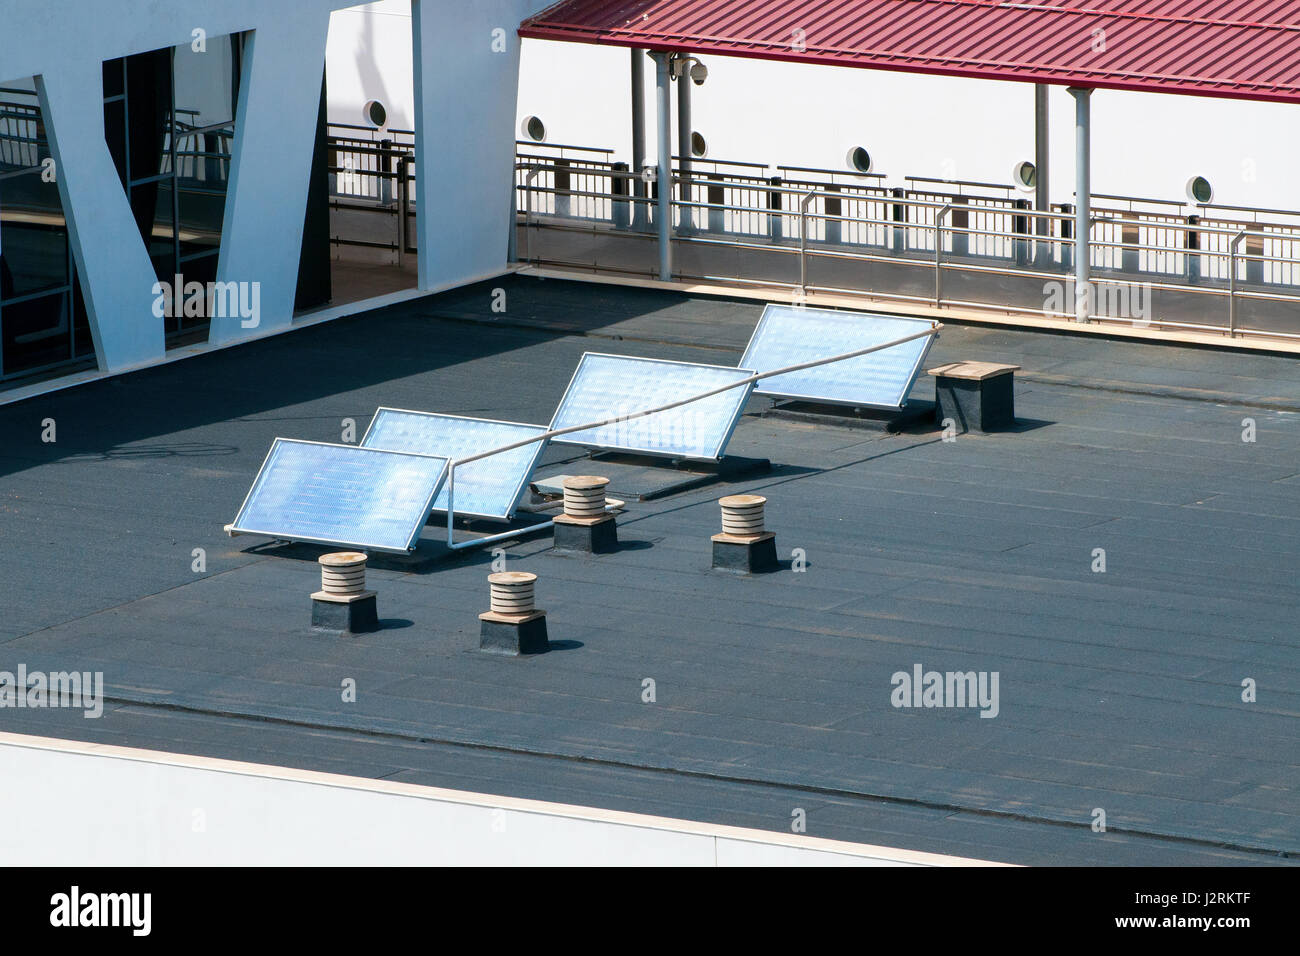 Quatre panneaux solaires sur le toit fixe qui absorbent la lumière du soleil comme source d'énergie pour produire de l'électricité ou de la chaleur Banque D'Images